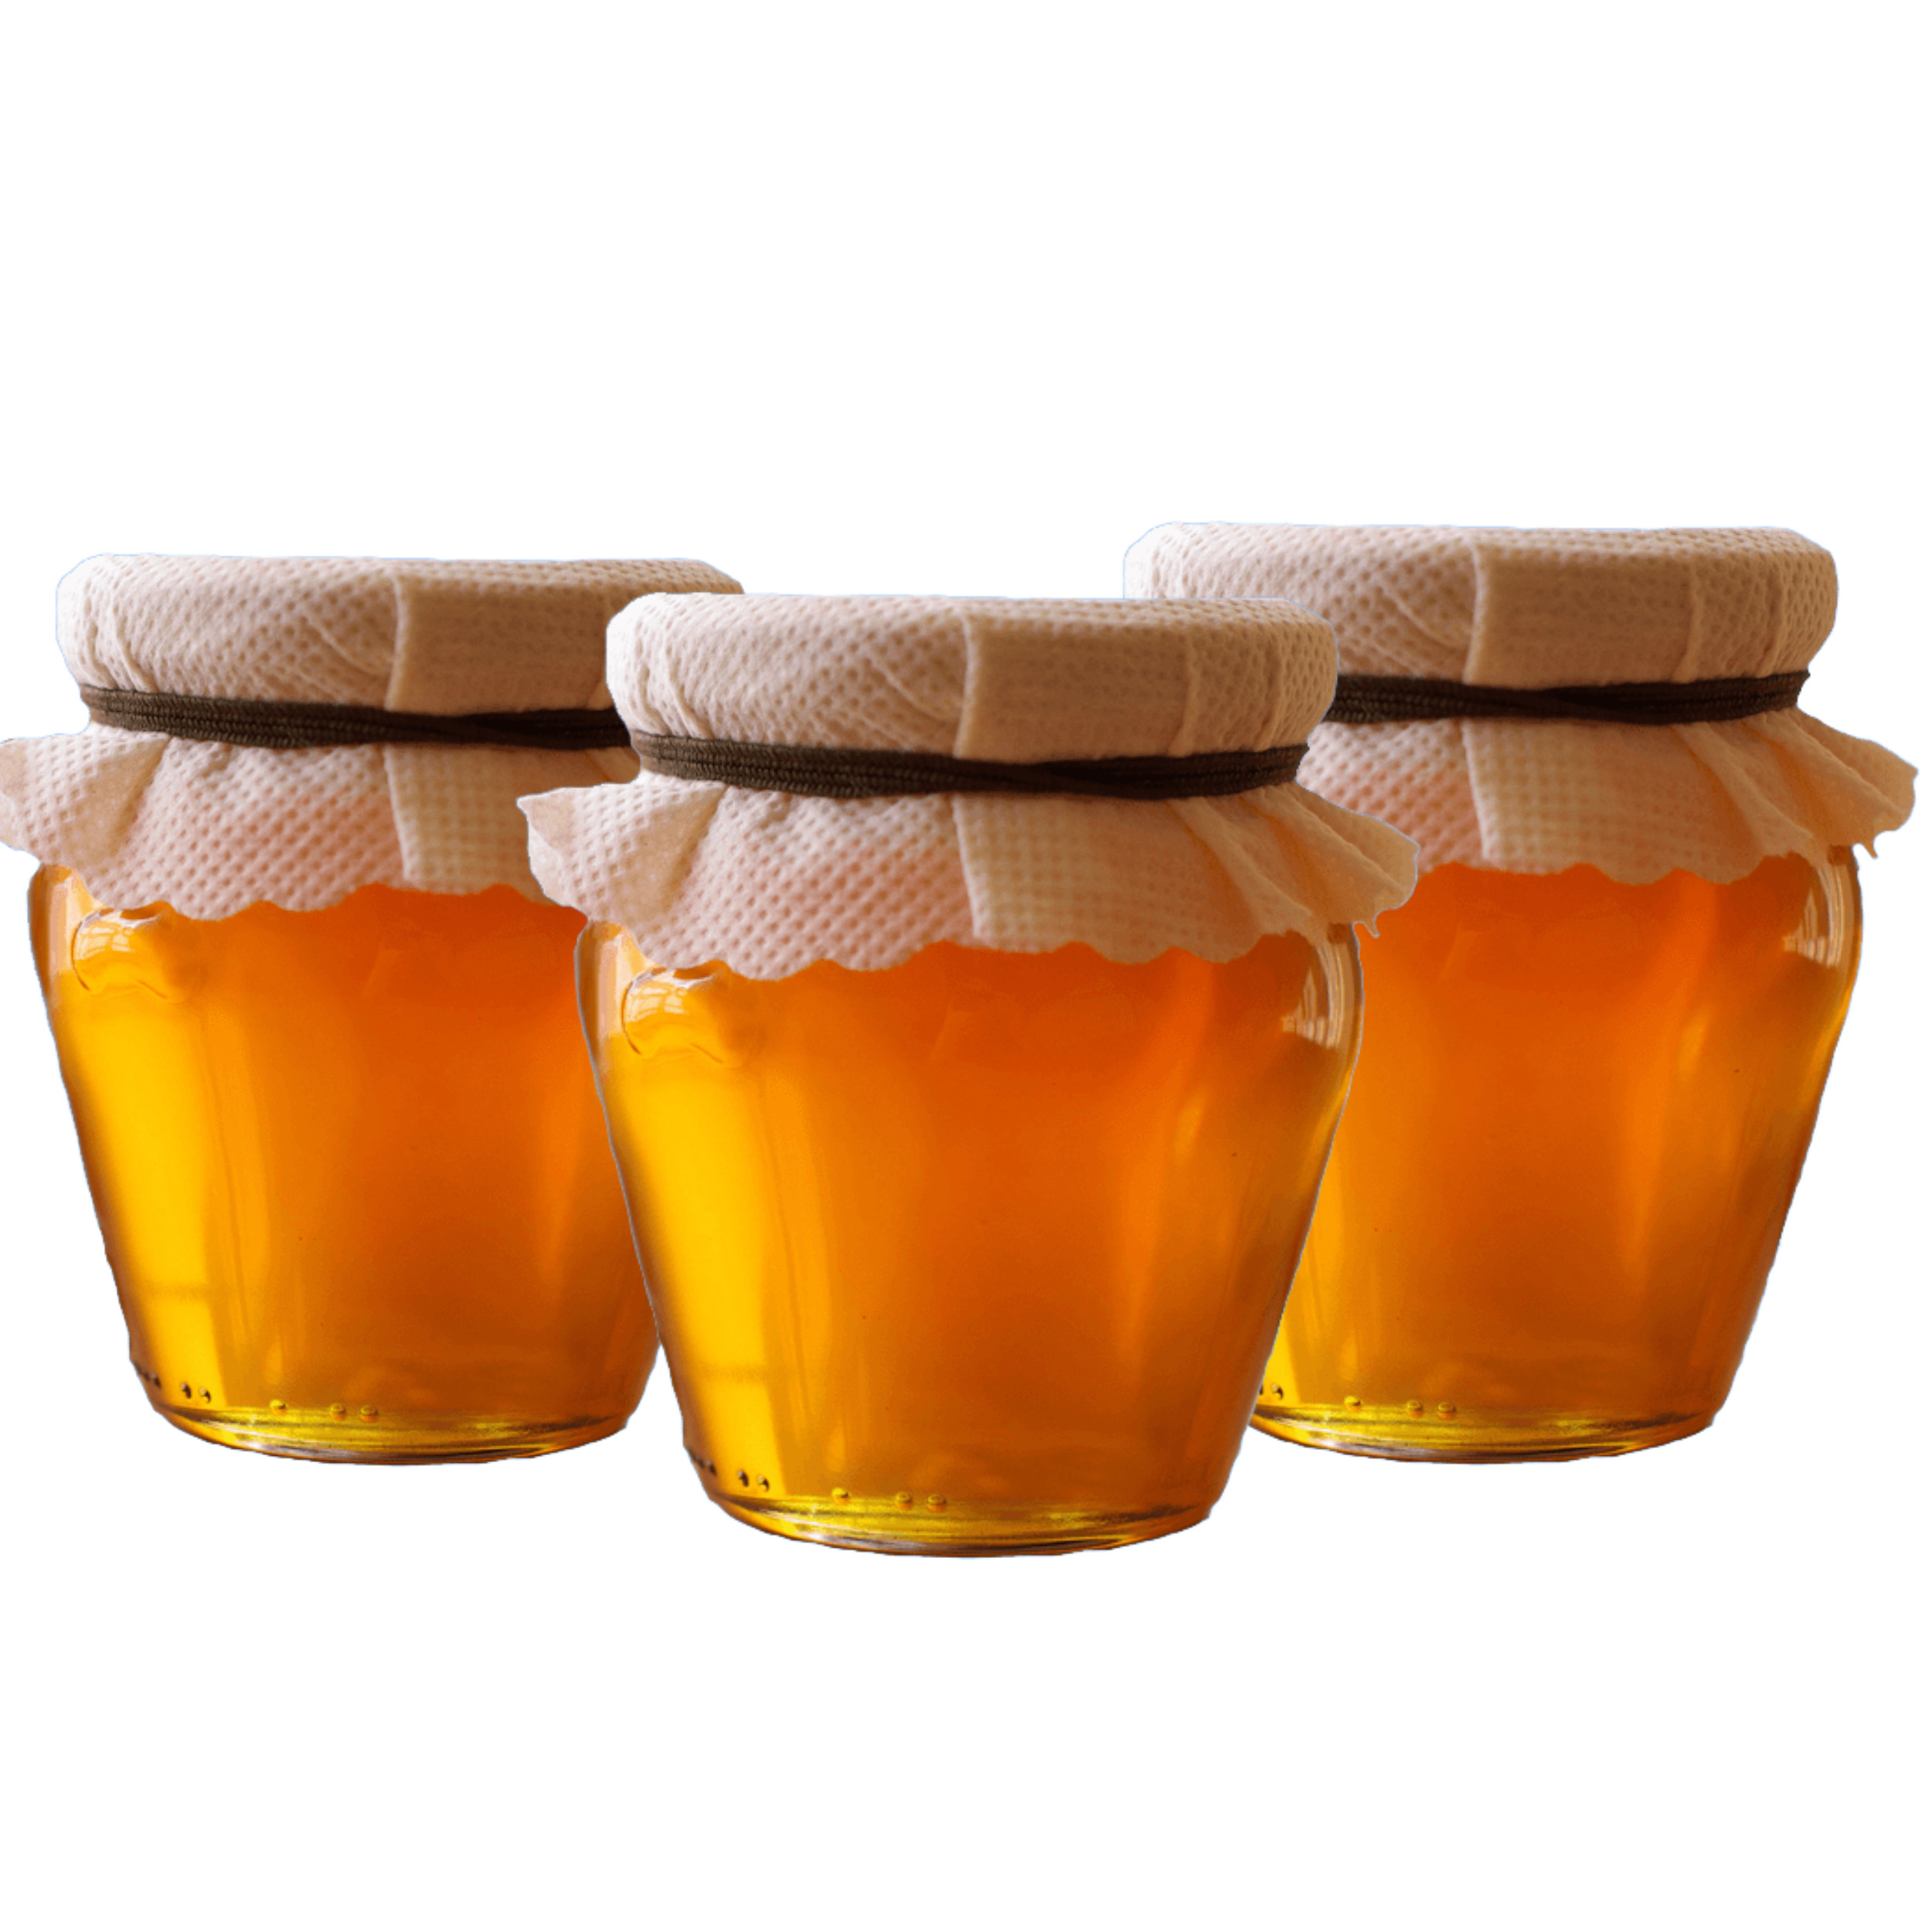 نکته خرید - قیمت روز عصاره عسل طبیعی سبلان اردبیل - 3 کیلوگرم بسته 3 عددی خرید